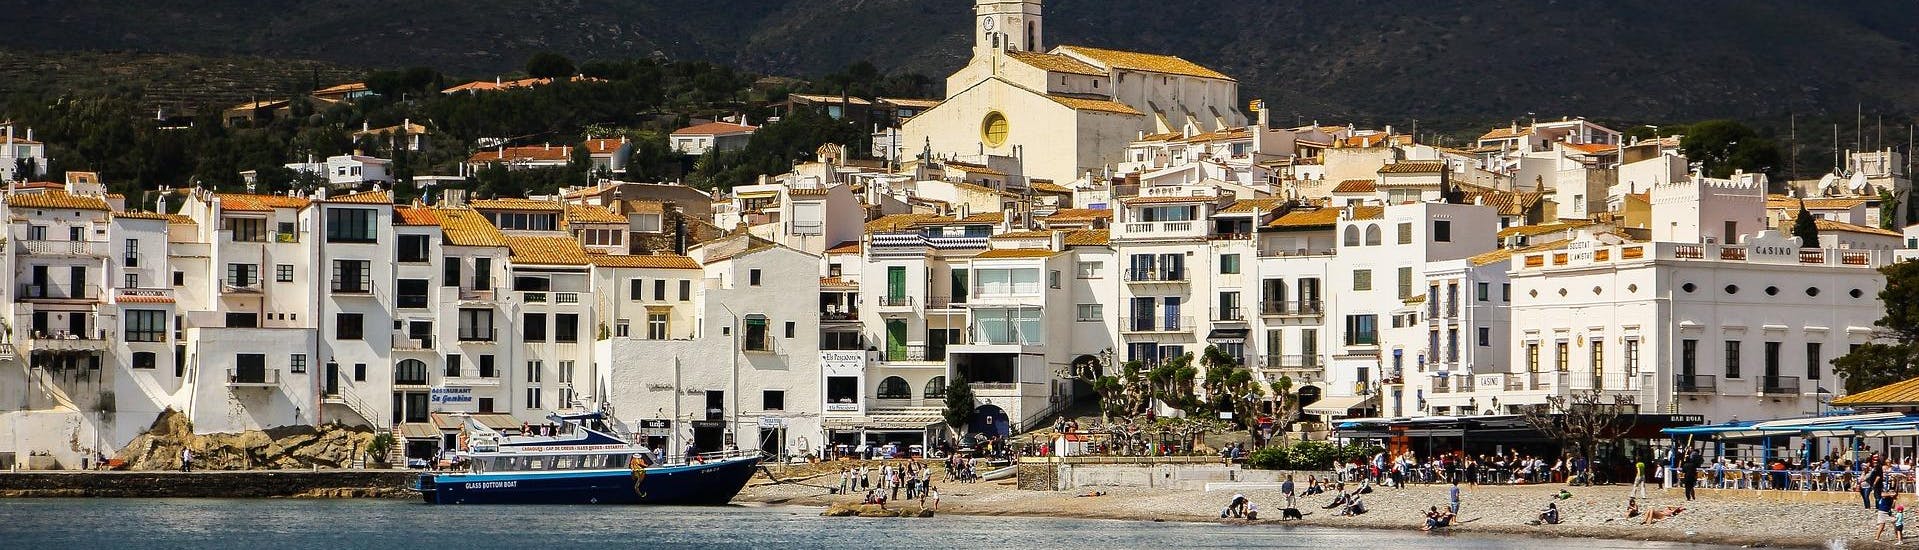 Blick auf die Küste während einer Bootsfahrt nach Cadaqués.